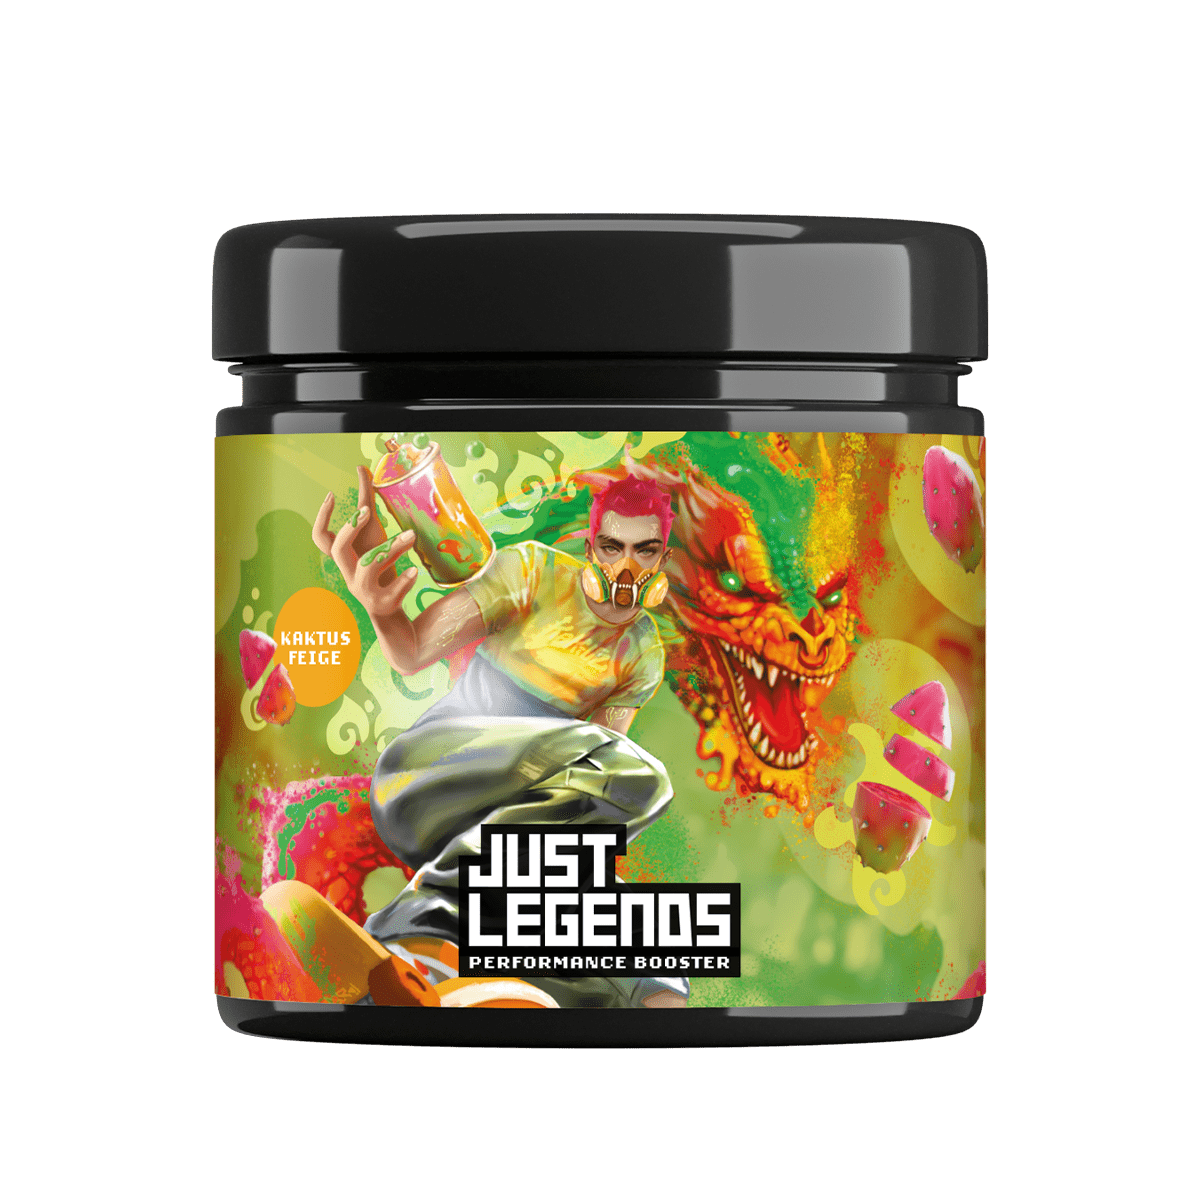 Just Legends Performance Booster Kaktusfeige | Funktionaler, veganer Performance Booster auf Pulverbasis ohne Zucker, mit wenig Kalorien, vielen Vitaminen und natürlichen Aromen.